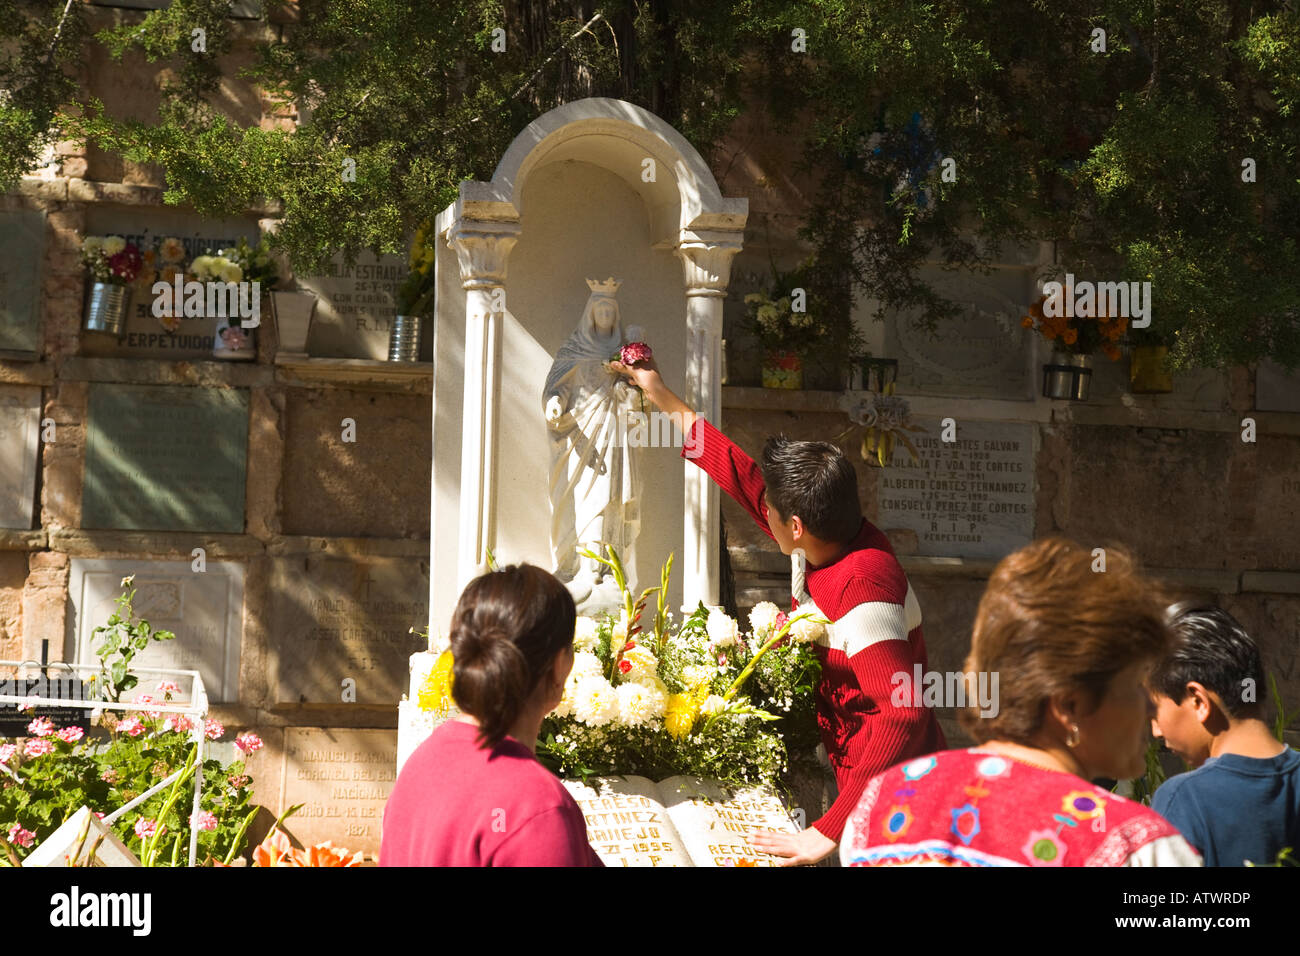 Mexiko Guanajuato junge mexikanische männlichen Ort Blume in der Hand der Statue Tag der toten Feier am Grab Frauen im Friedhof Stockfoto